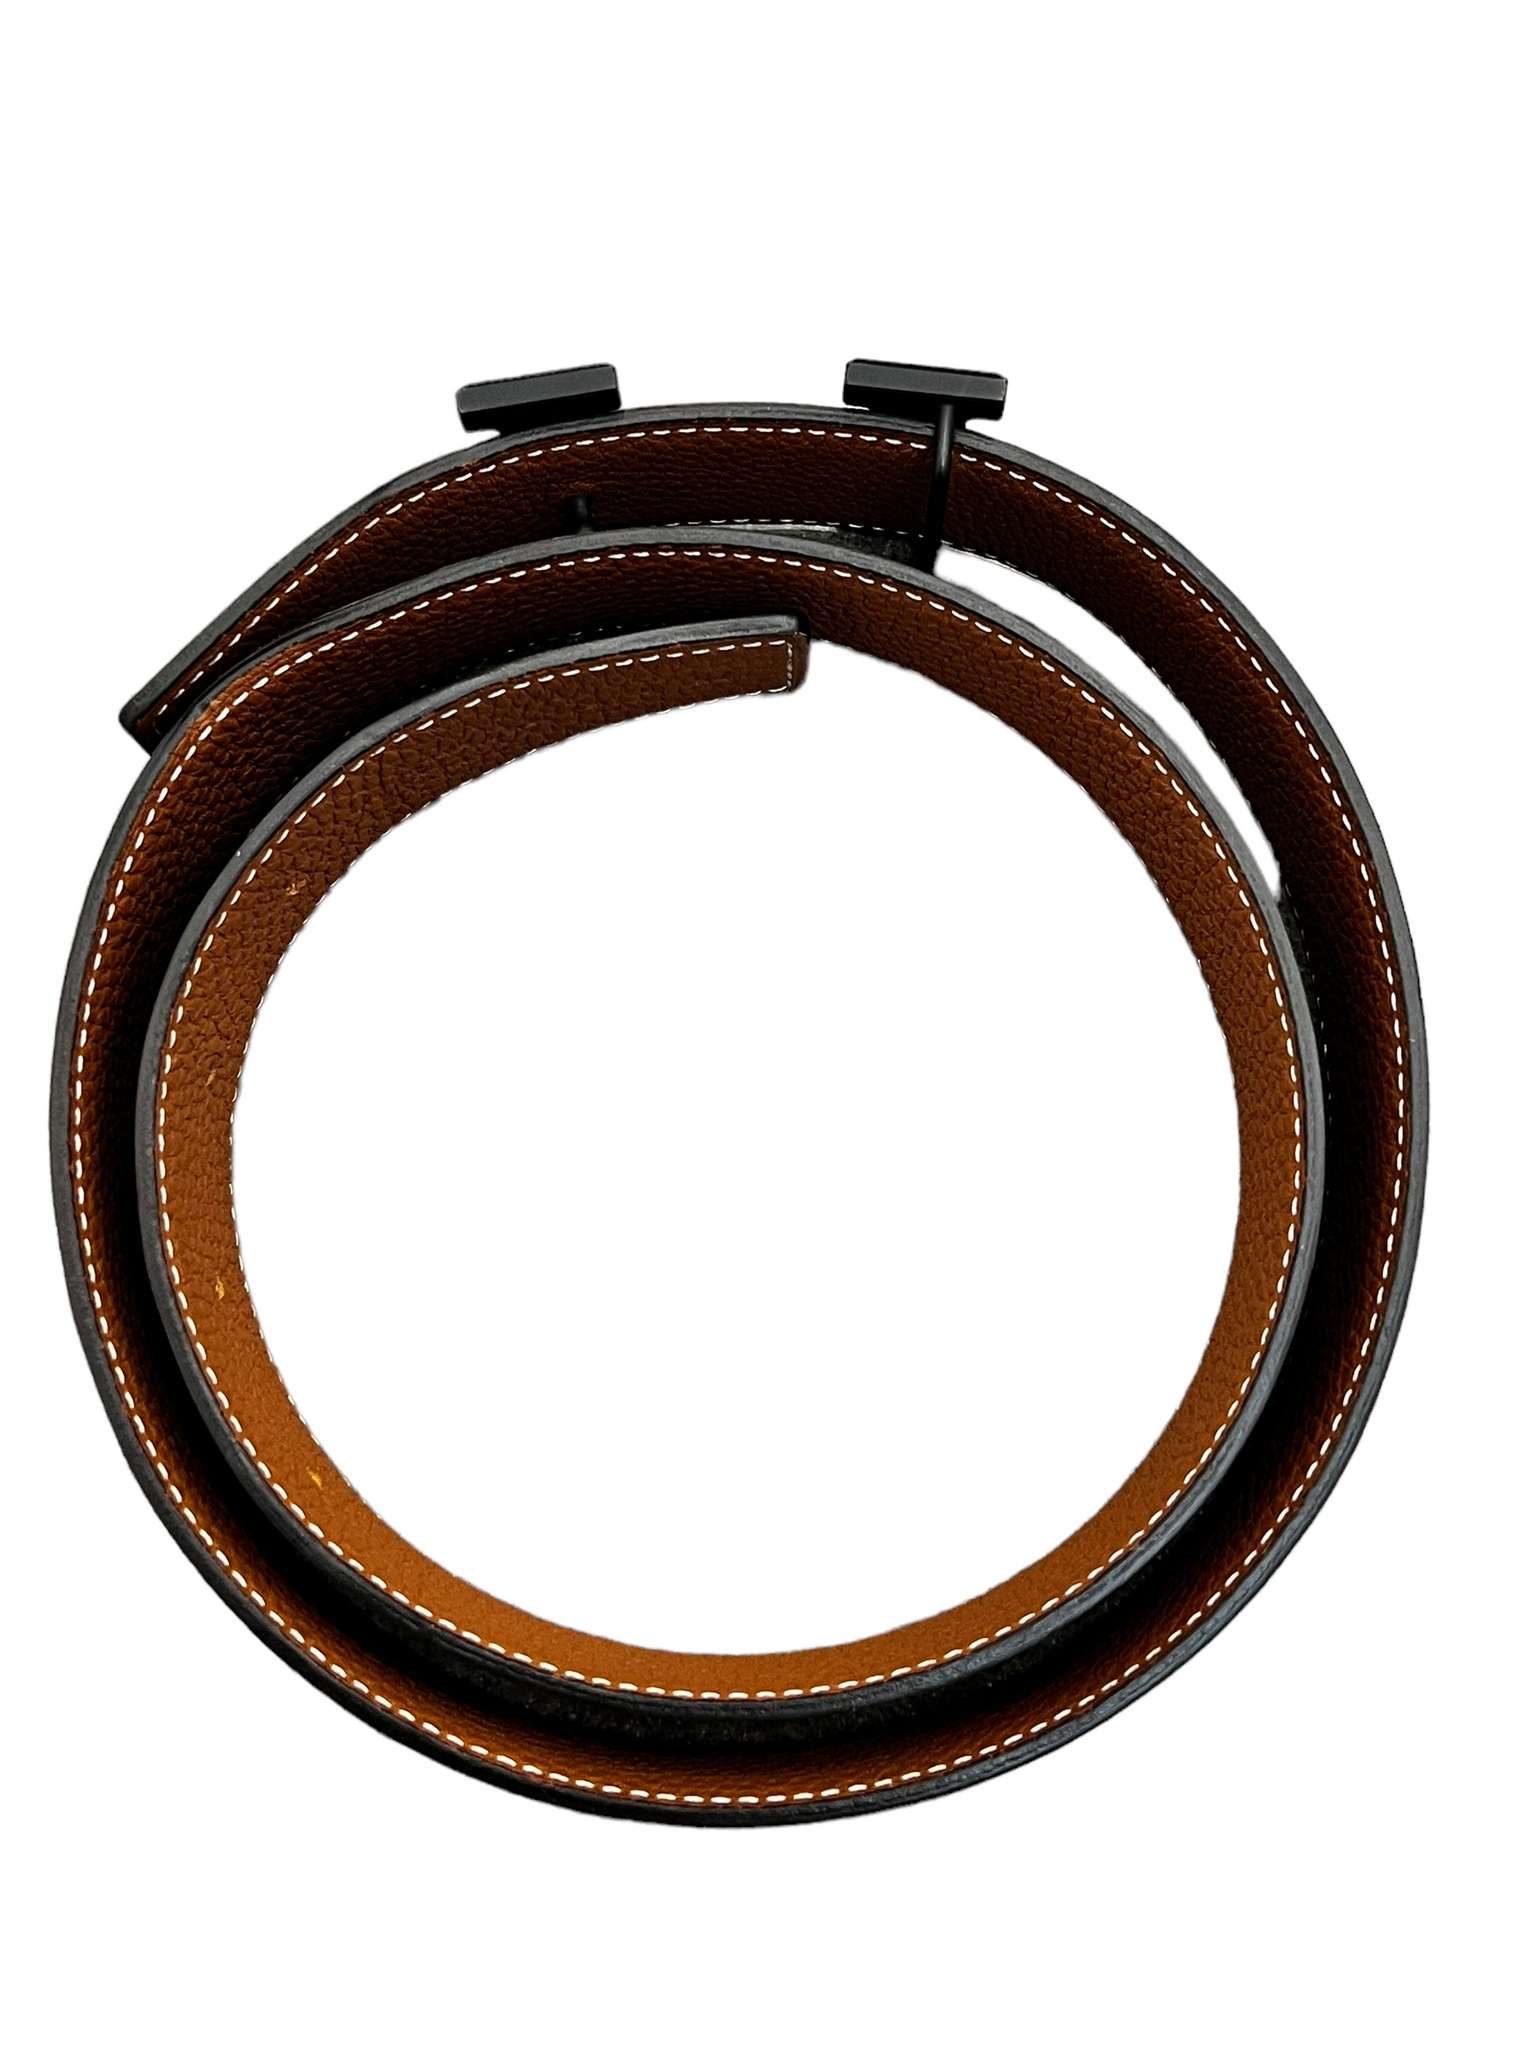 Destrier belt buckle & Leather strap 32 mm